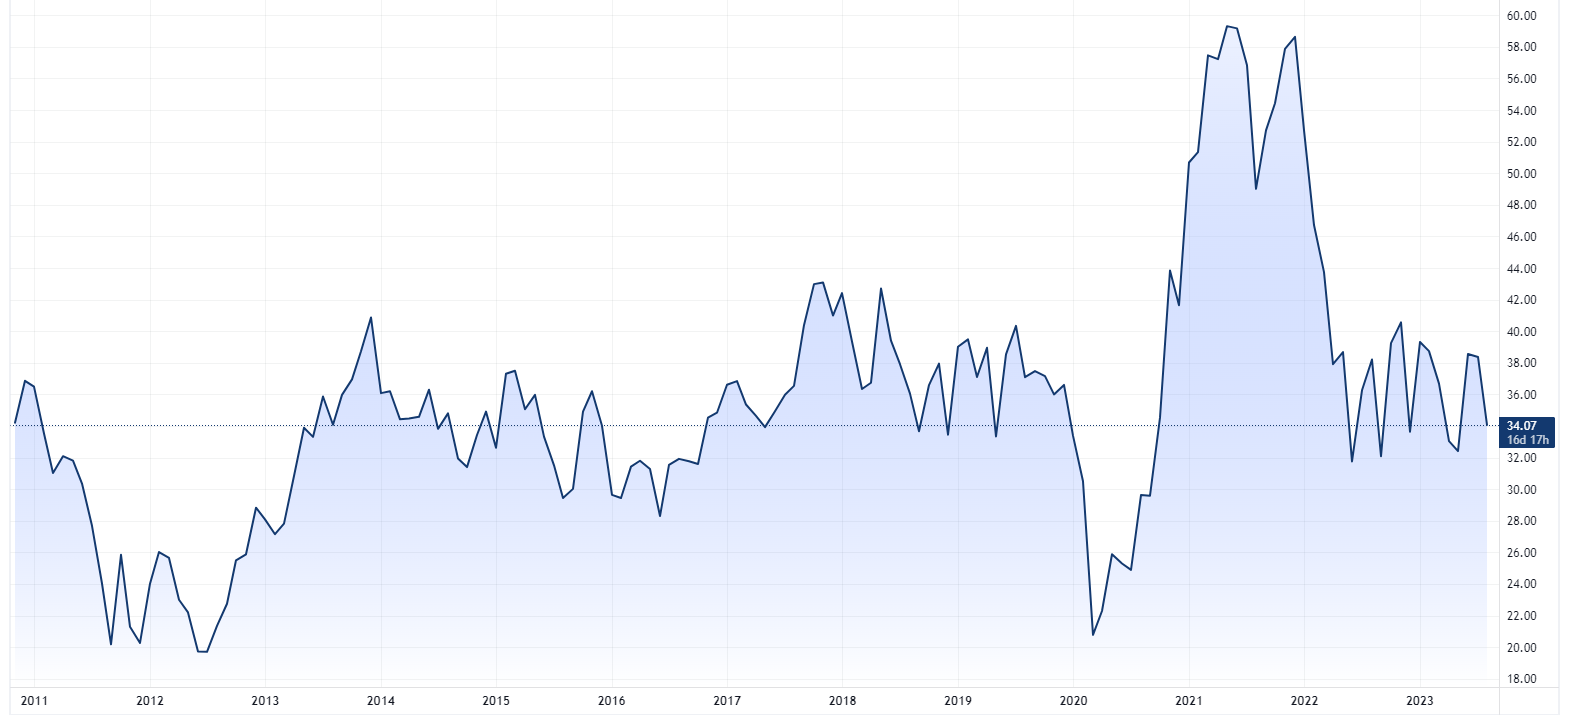 General Motors price chart (Source: TradingView)